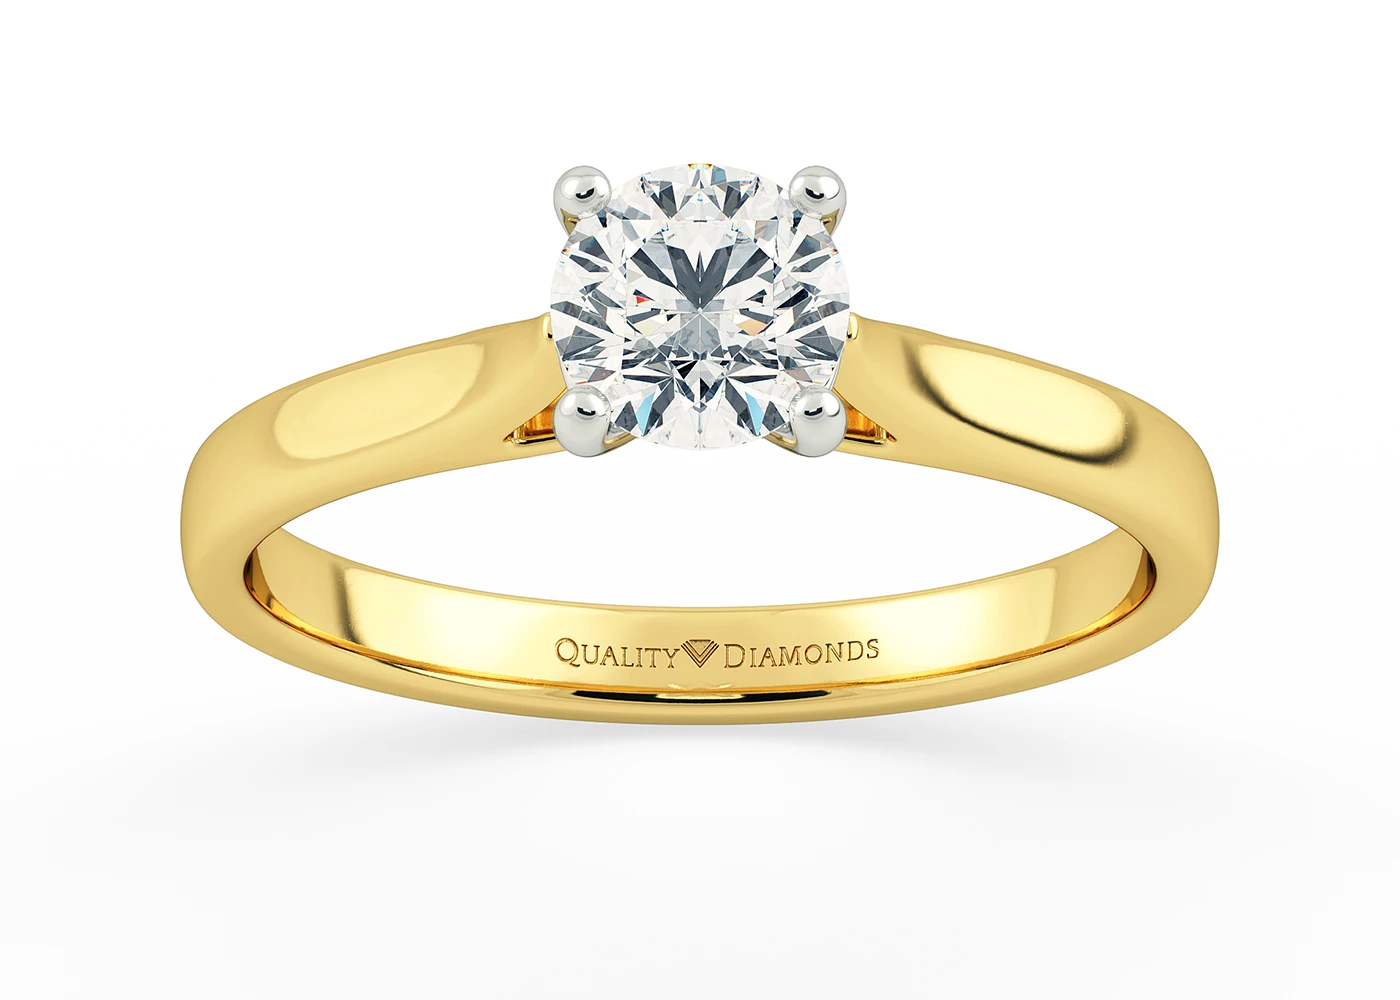 Round Brilliant Romantico Diamond Ring in 9K Yellow Gold